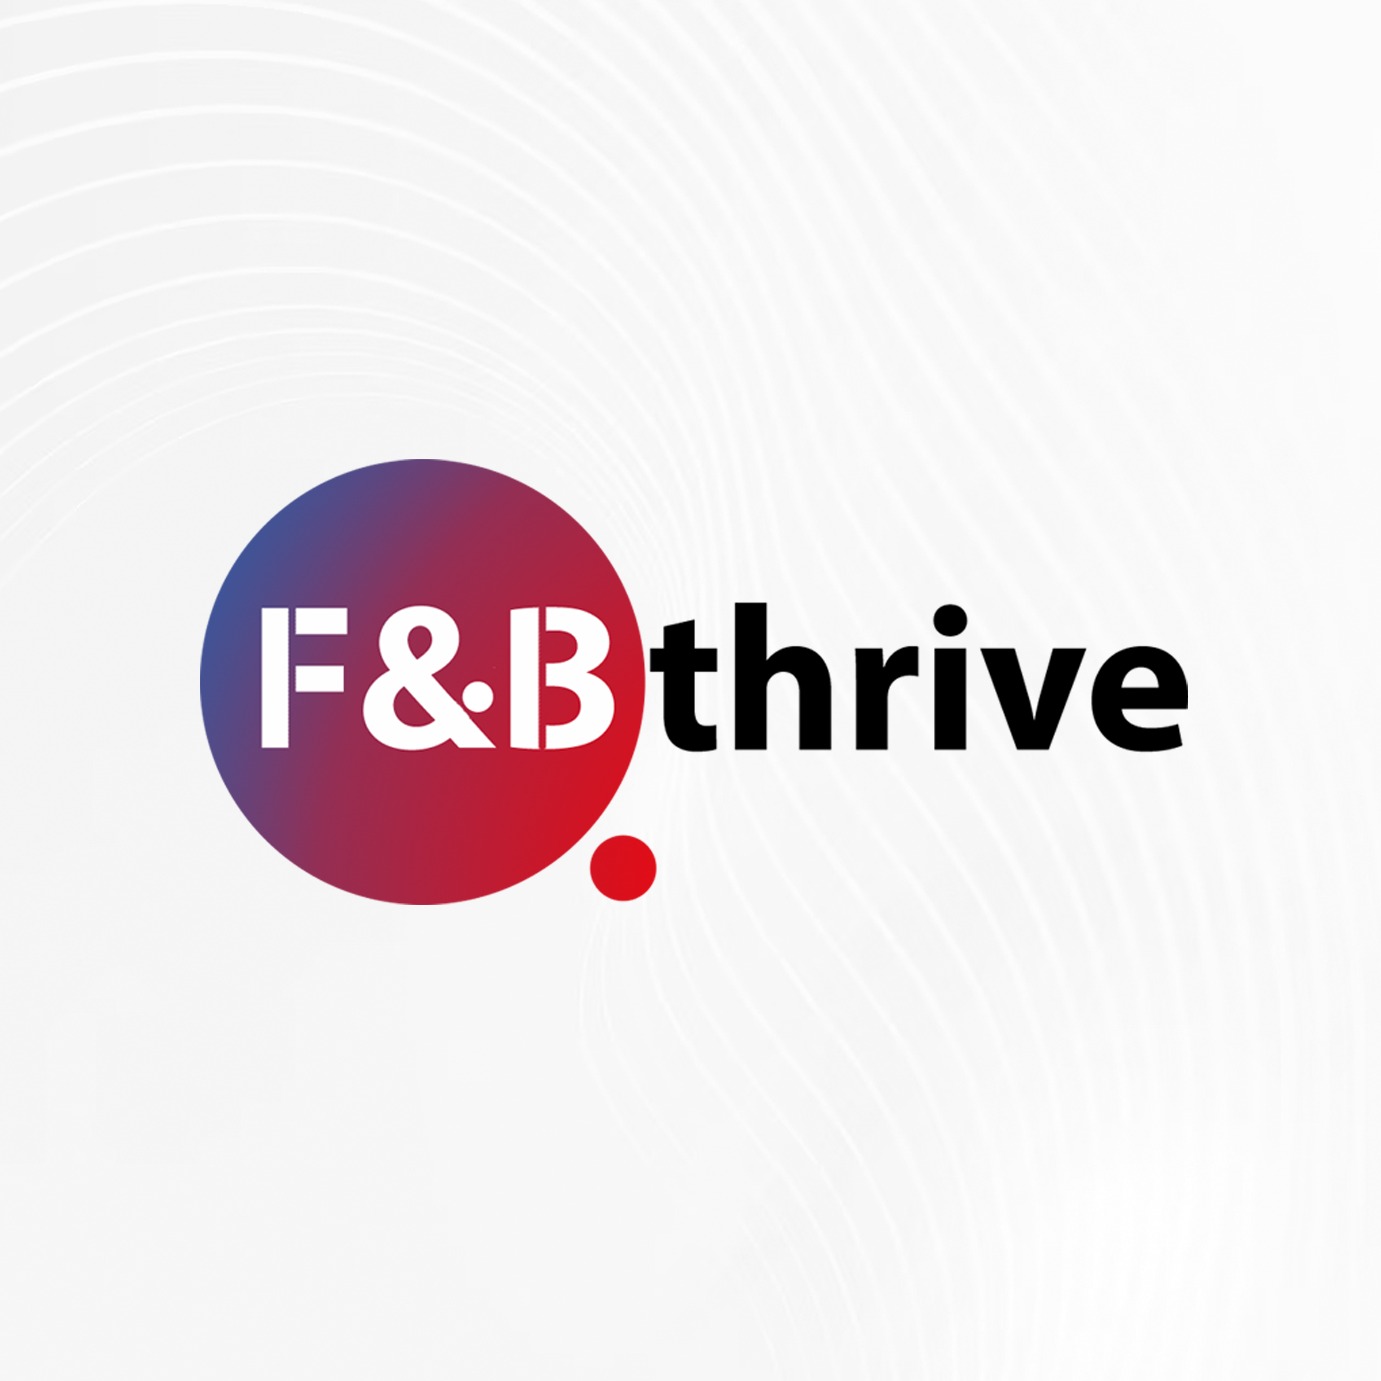 f&bthrive | advertisement services in bengaluru